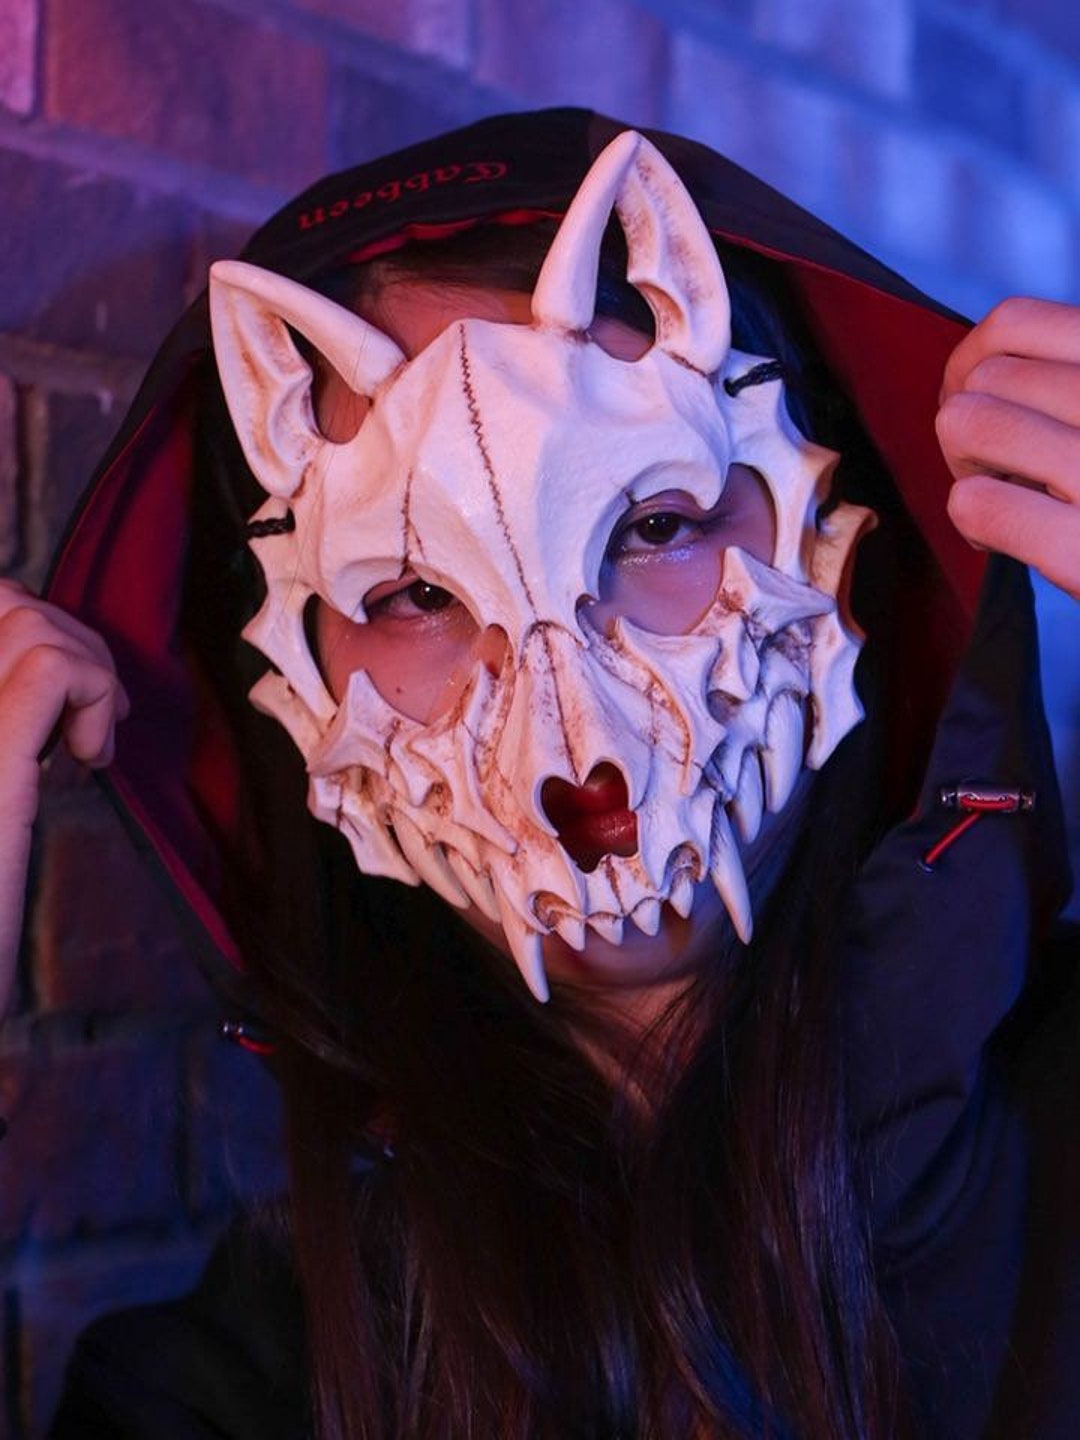 Therian Wolf skull mask black / white / luminous resin mask -  Portugal